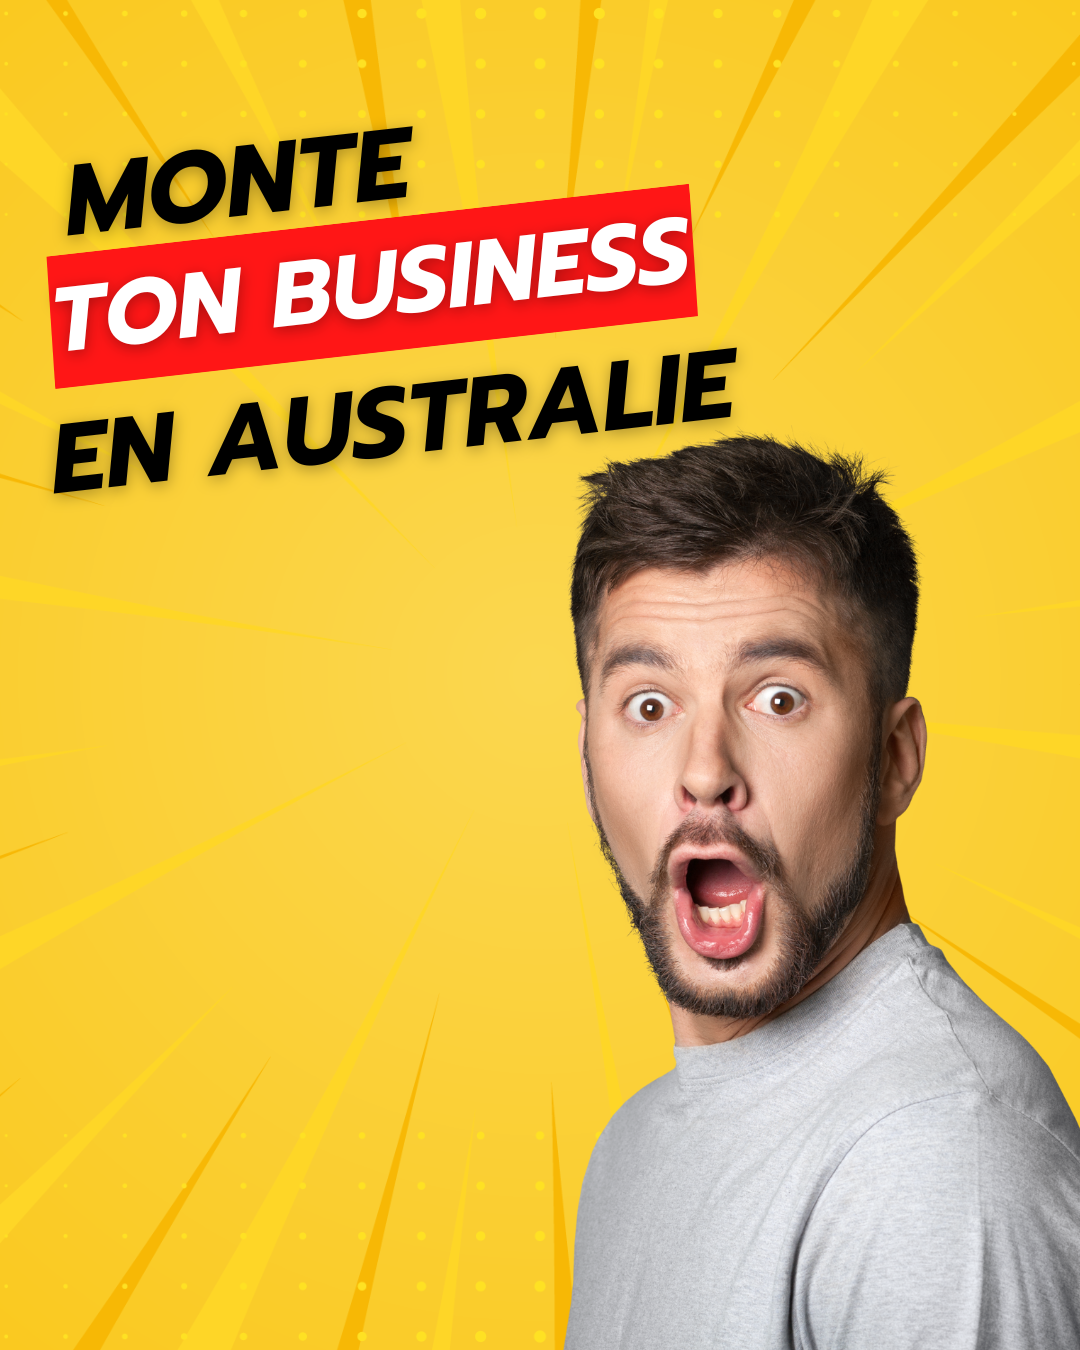 Monte ton business en Australie!